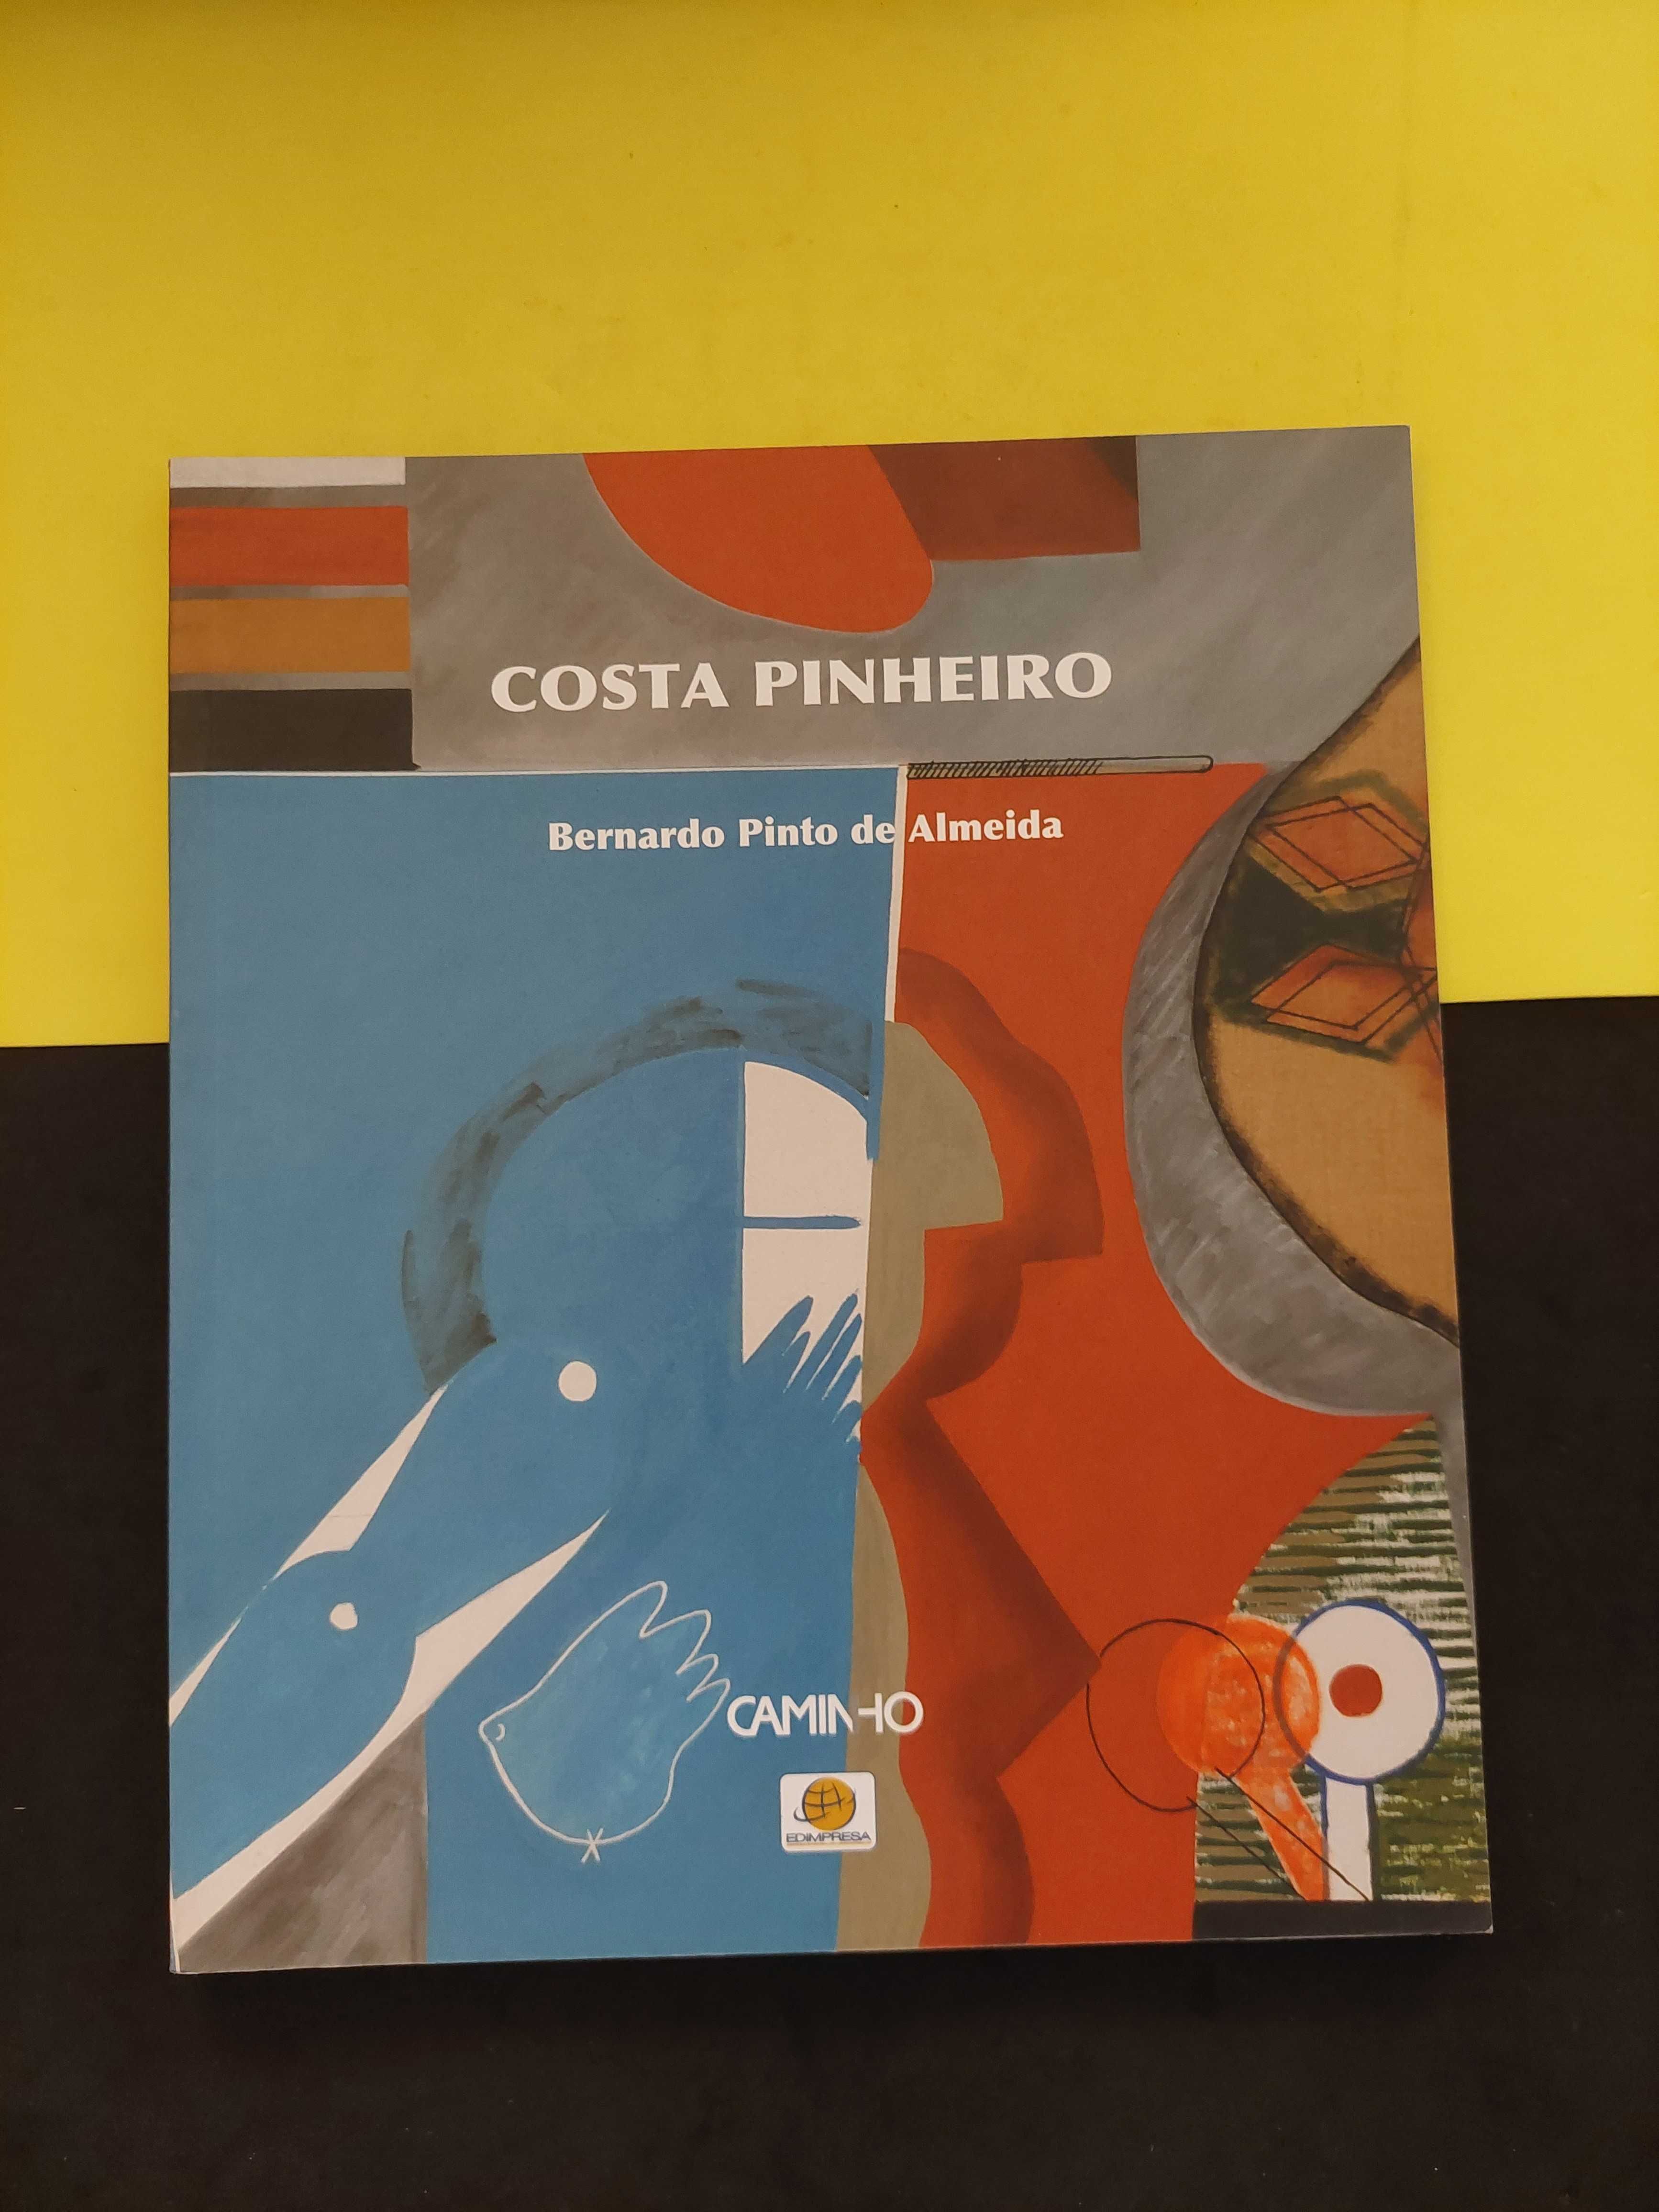 Bernardo Pinto de Almeida - Costa Pinheiro